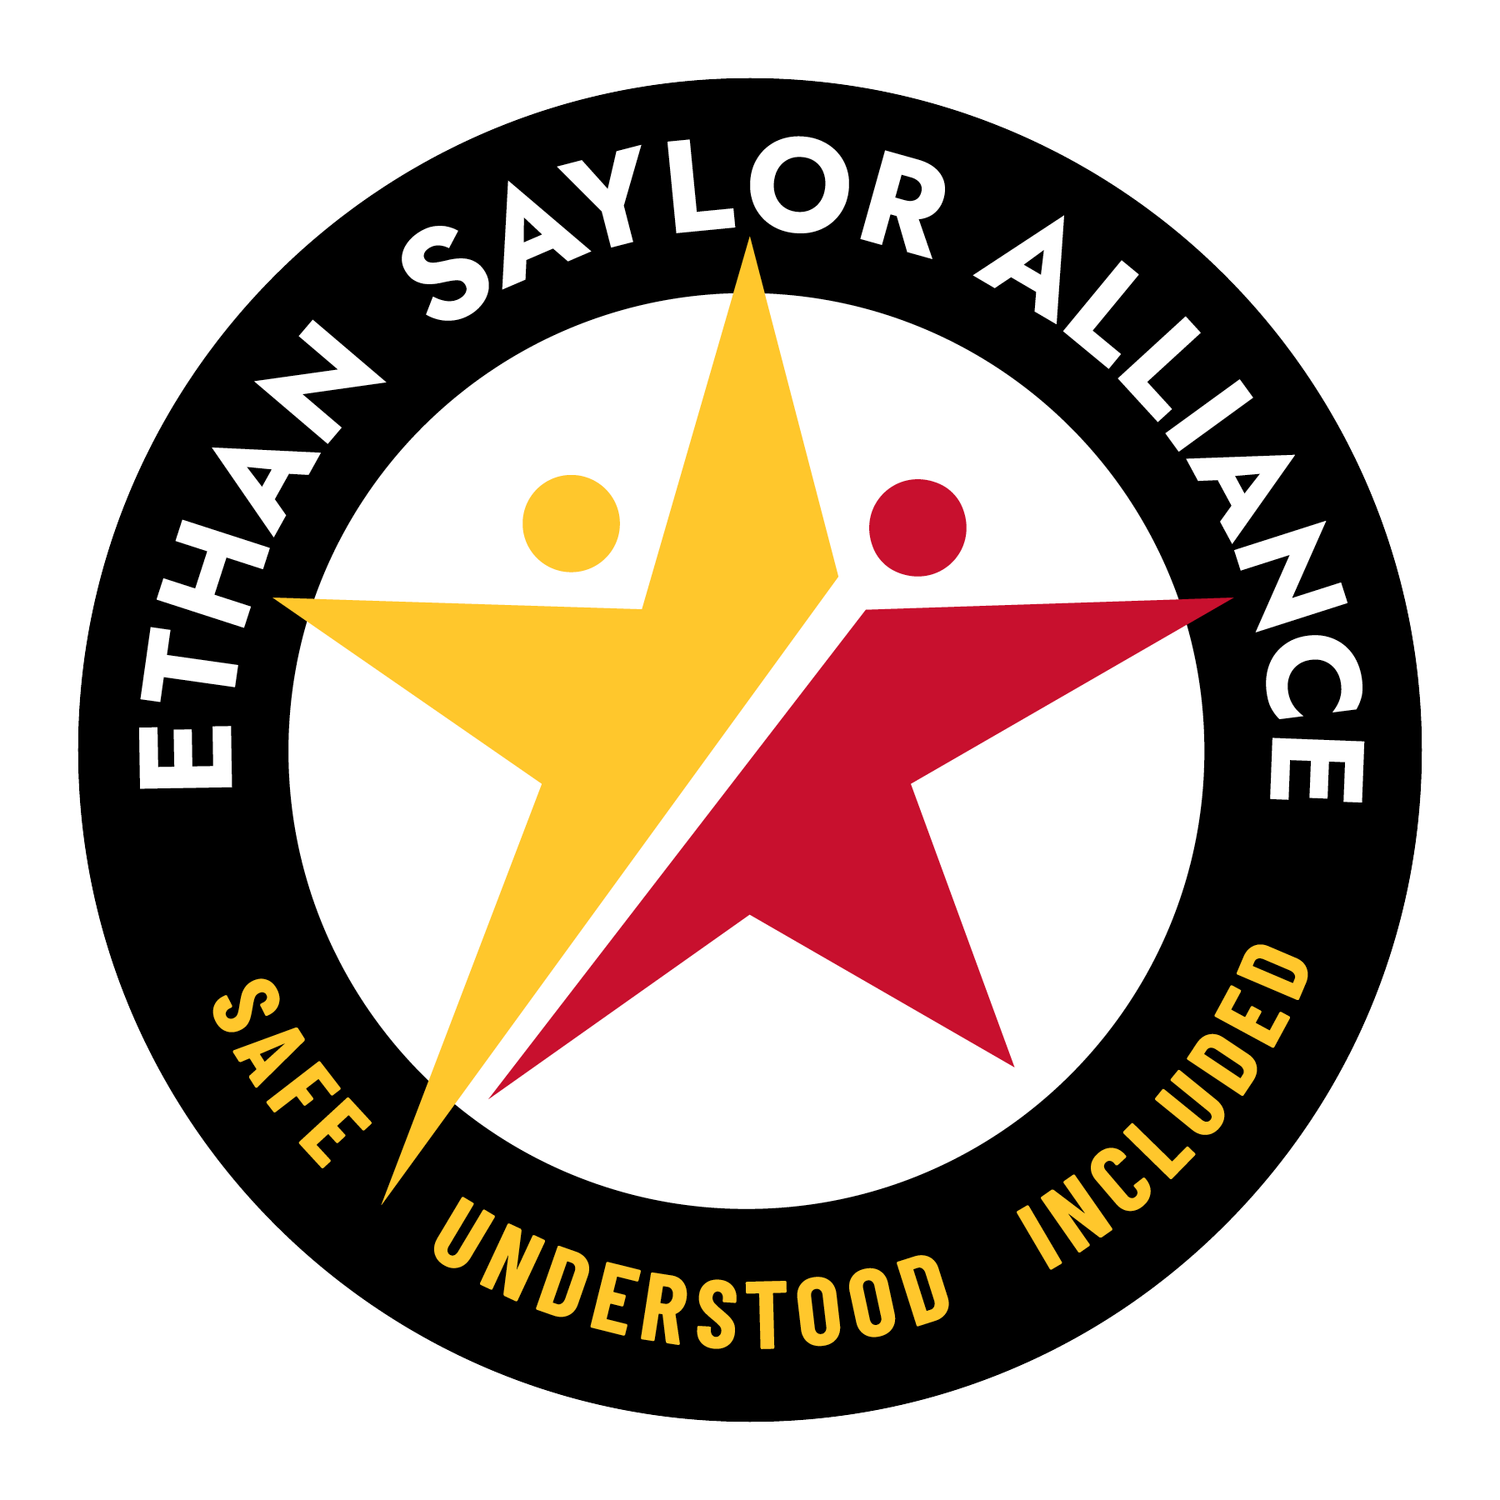 Ethan Saylor Alliance